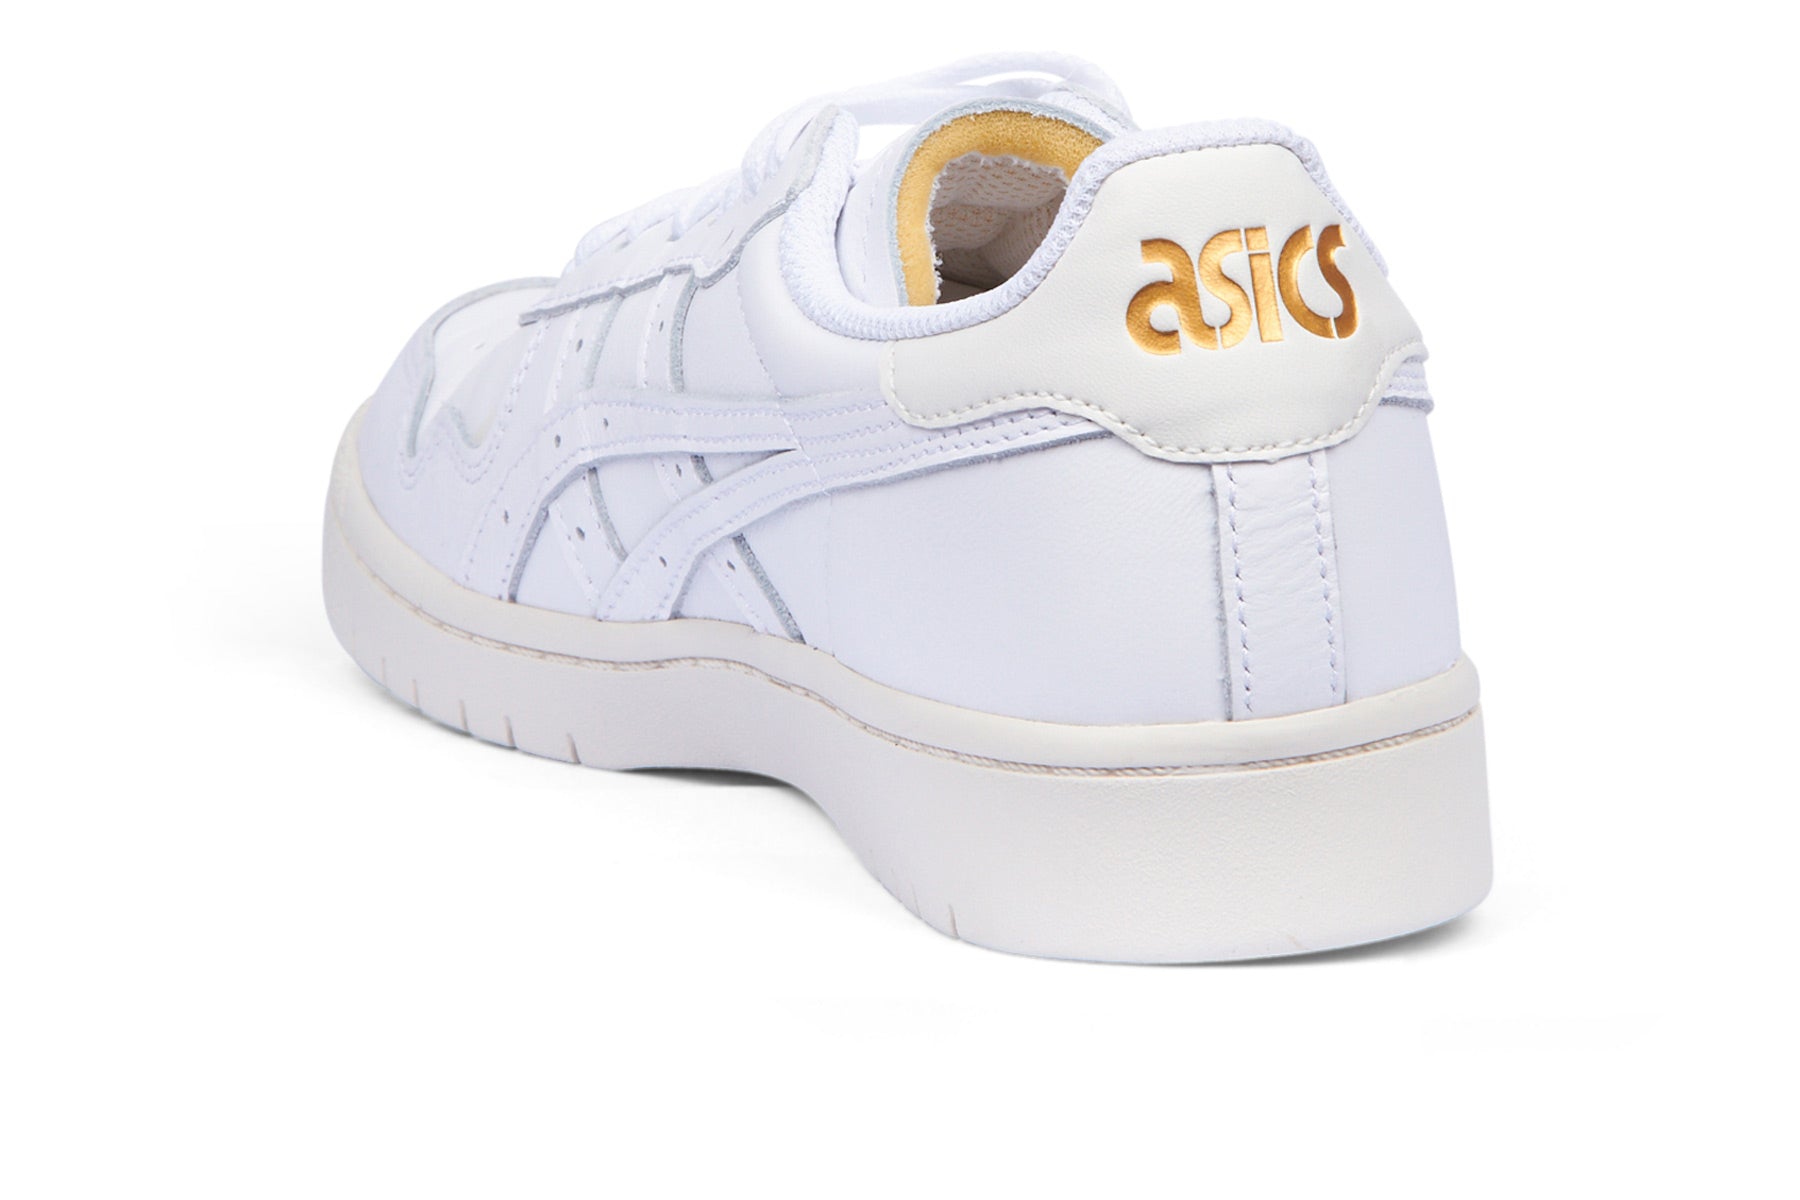 Asics Japan S - White/Cream